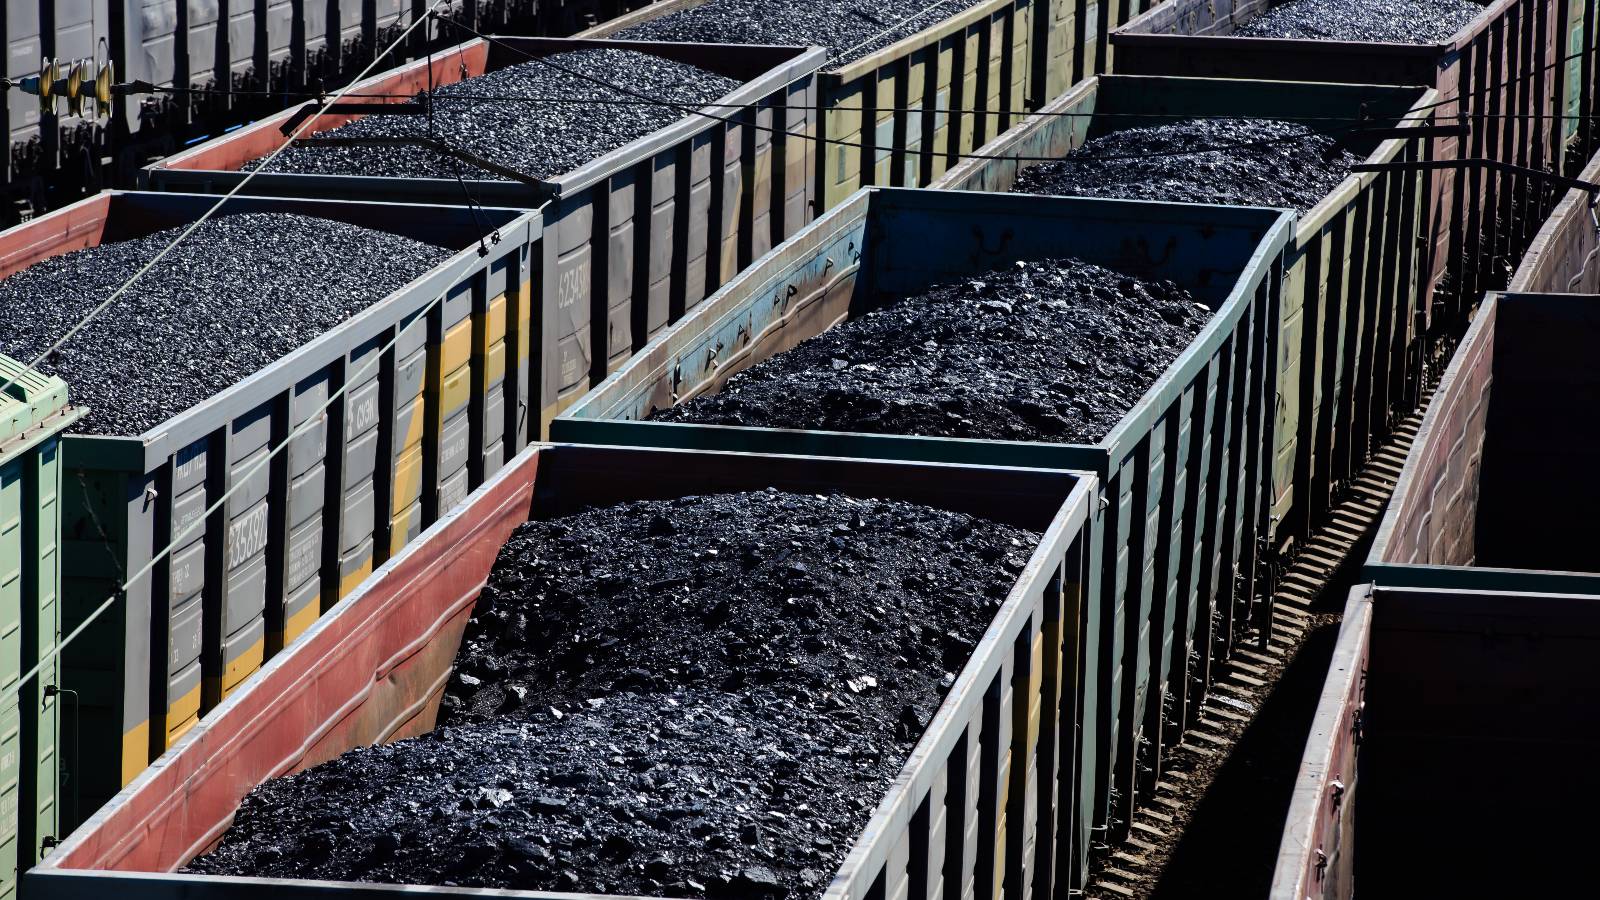 medium shot of open rail cars full of coal